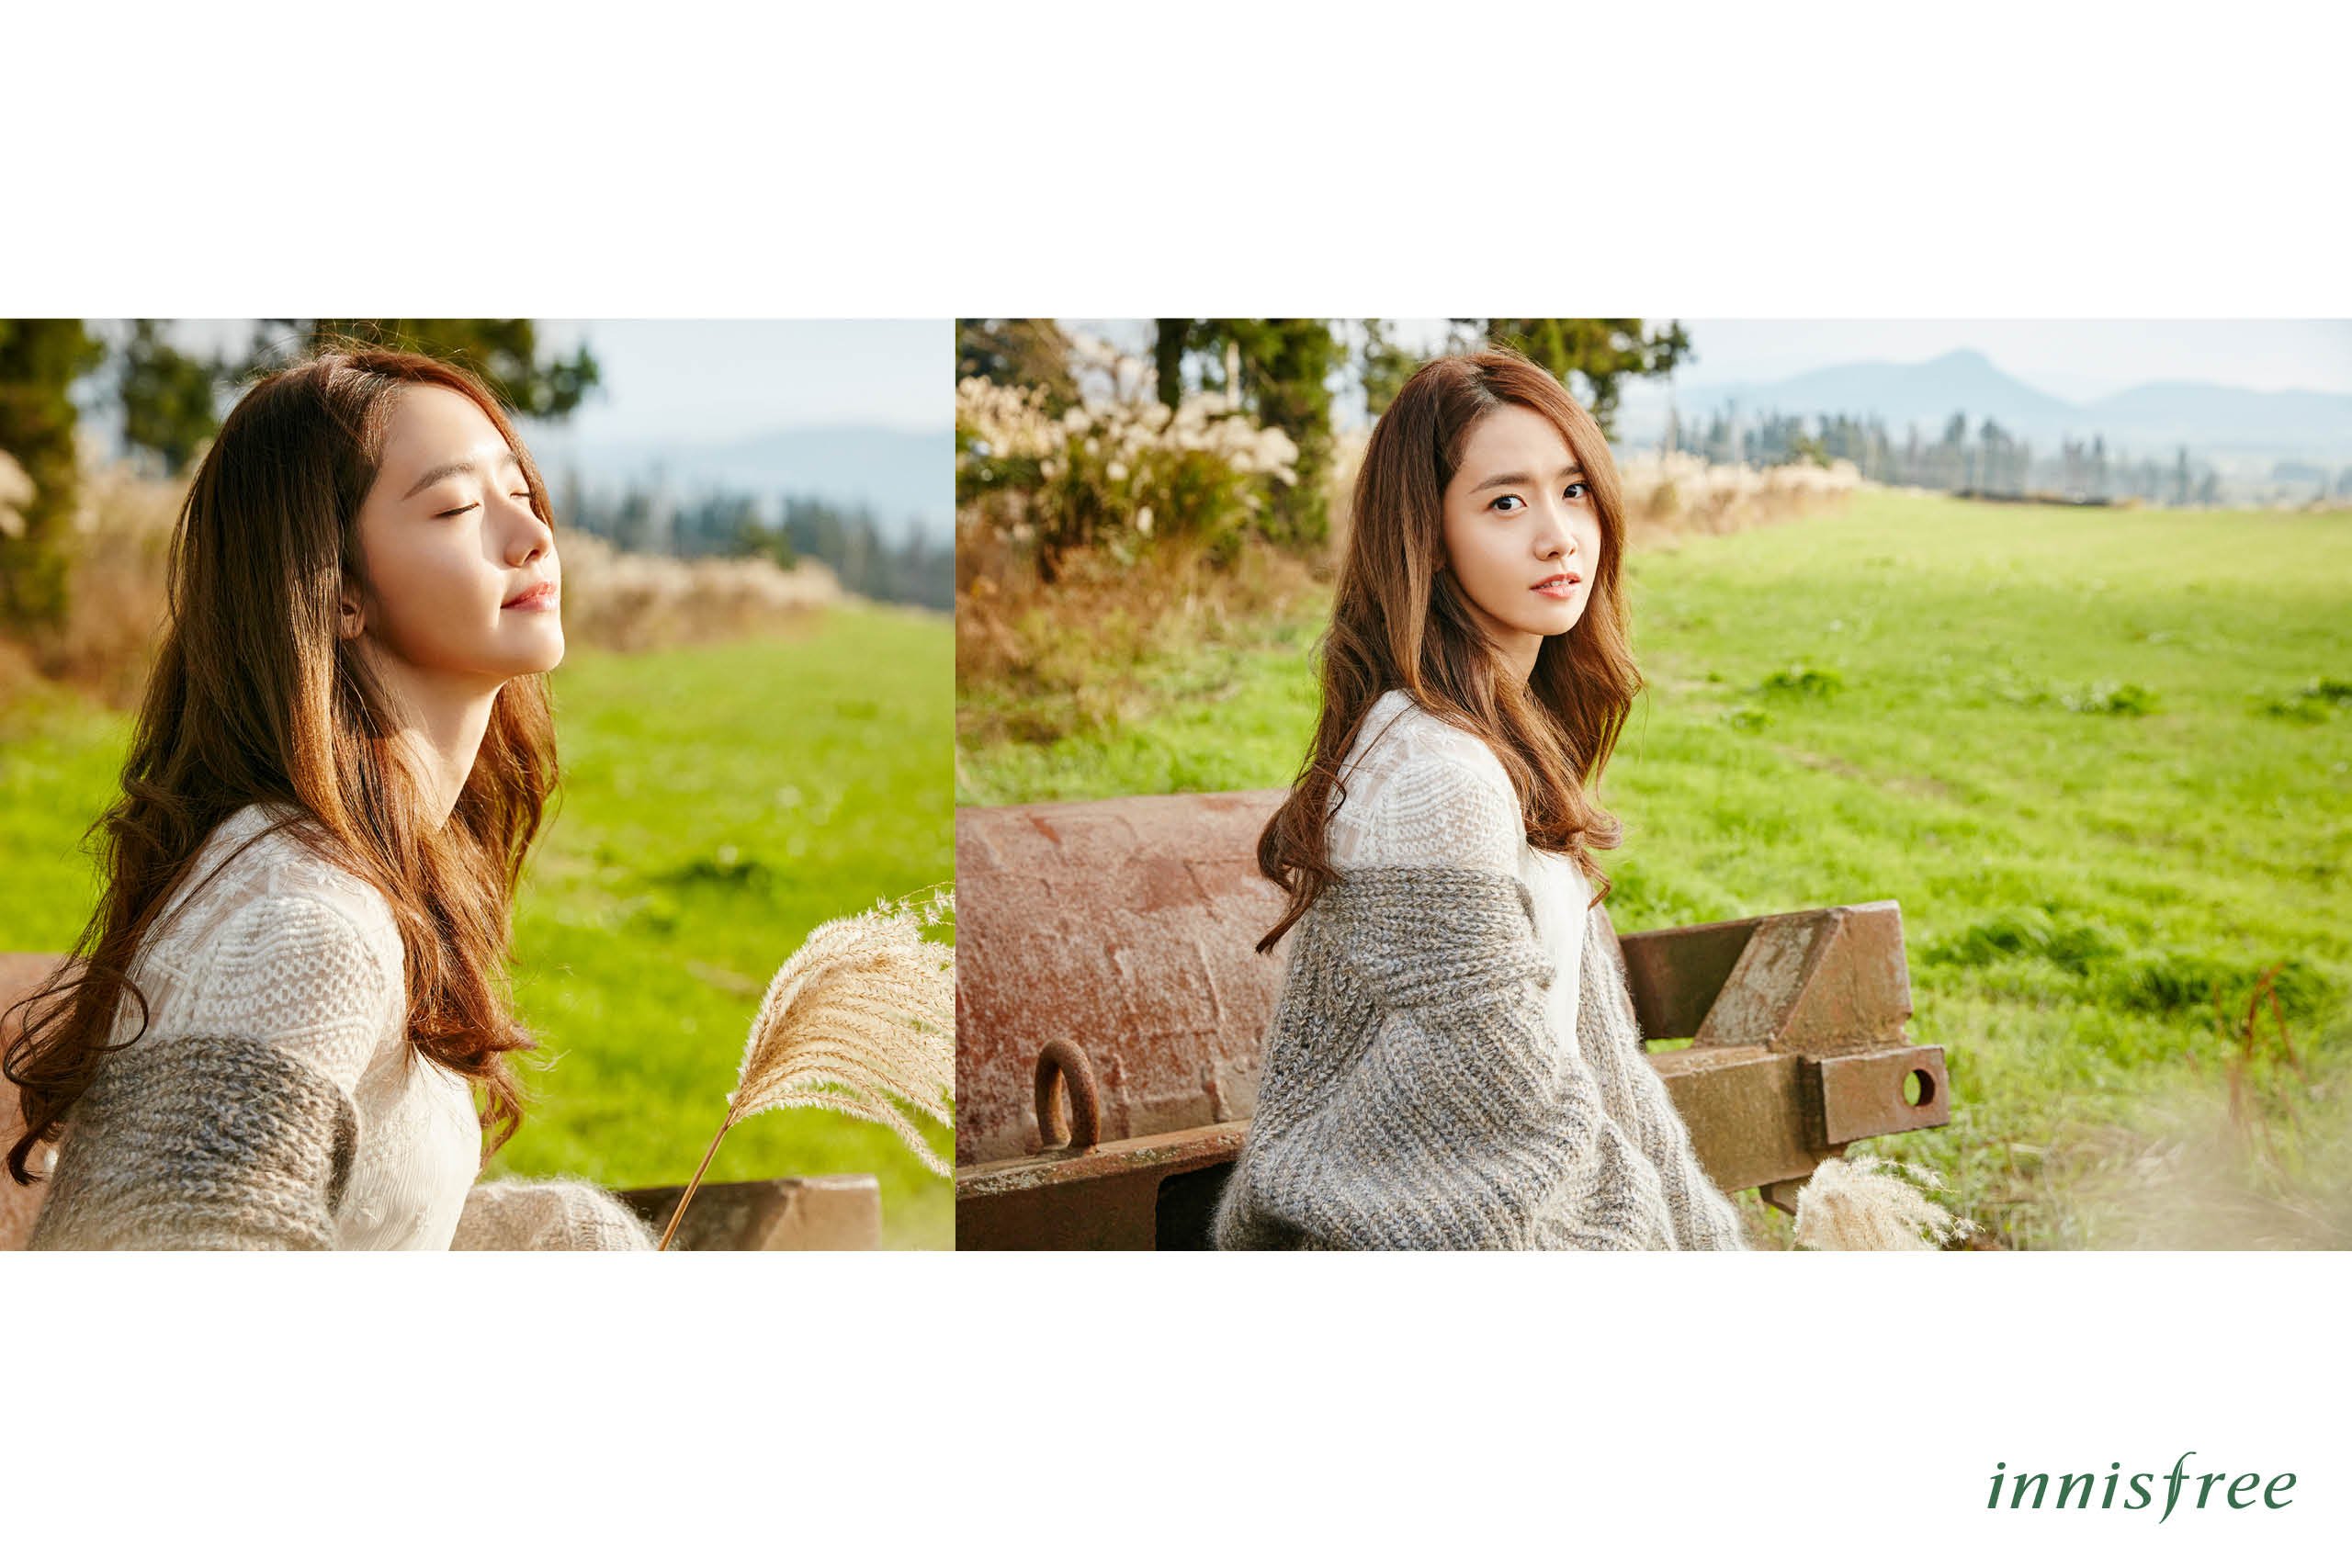 [OTHER][21-07-2012]Hình ảnh mới nhất từ thương hiệu "Innisfree" của YoonA - Page 14 ZqJIfLv9Ep-3000x3000